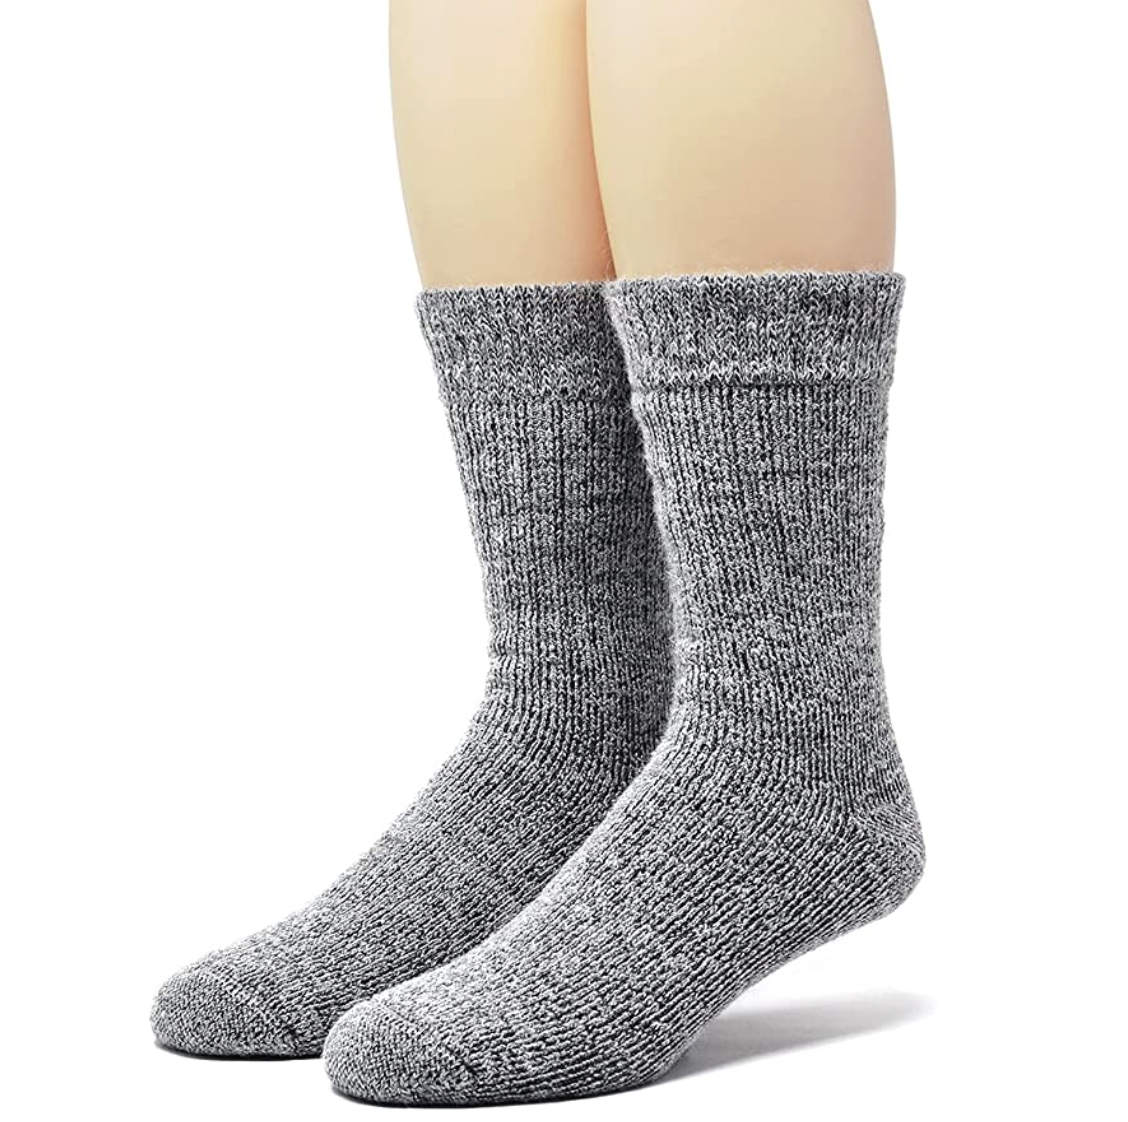 6 or 12 Pairs Ladies HeatGuard Luxury Thermal Winter Socks Black or Mixed 